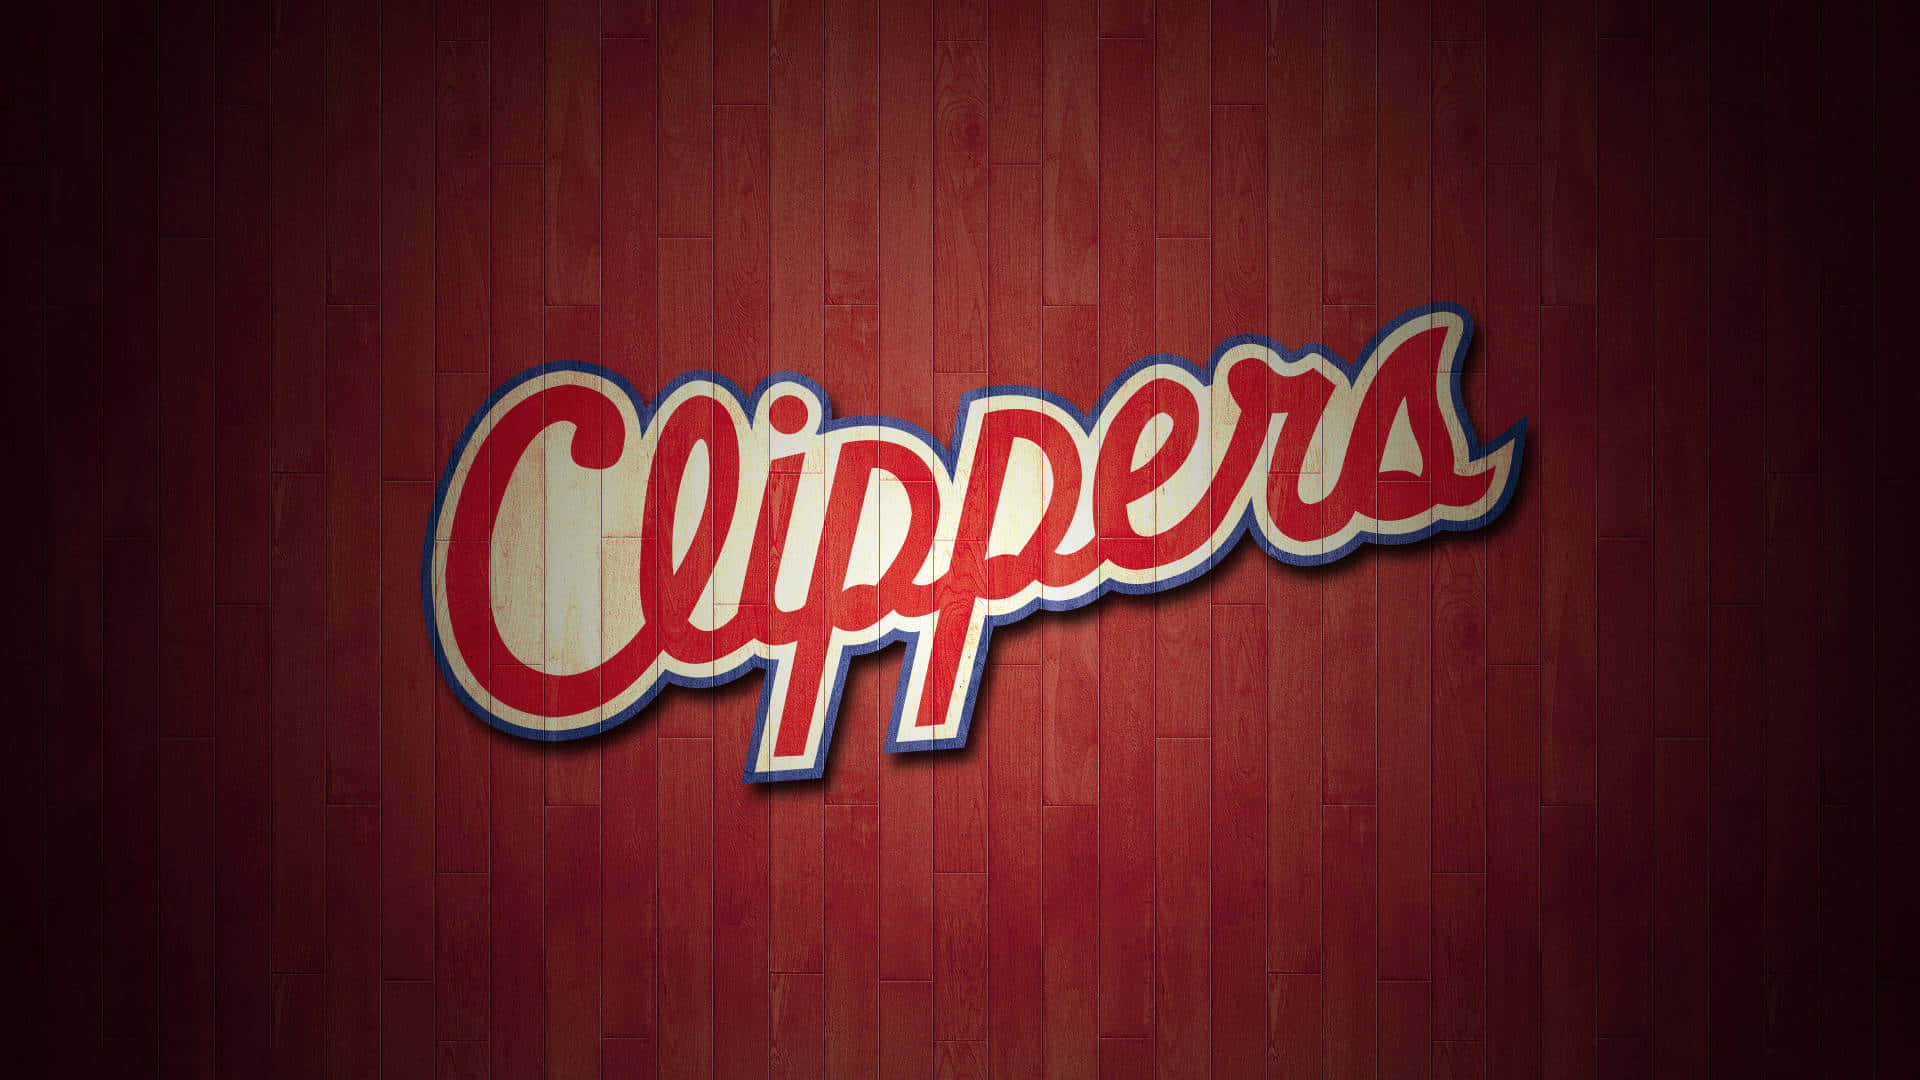 Squadradi Basket Rossa La Clippers, Tipografia. Sfondo